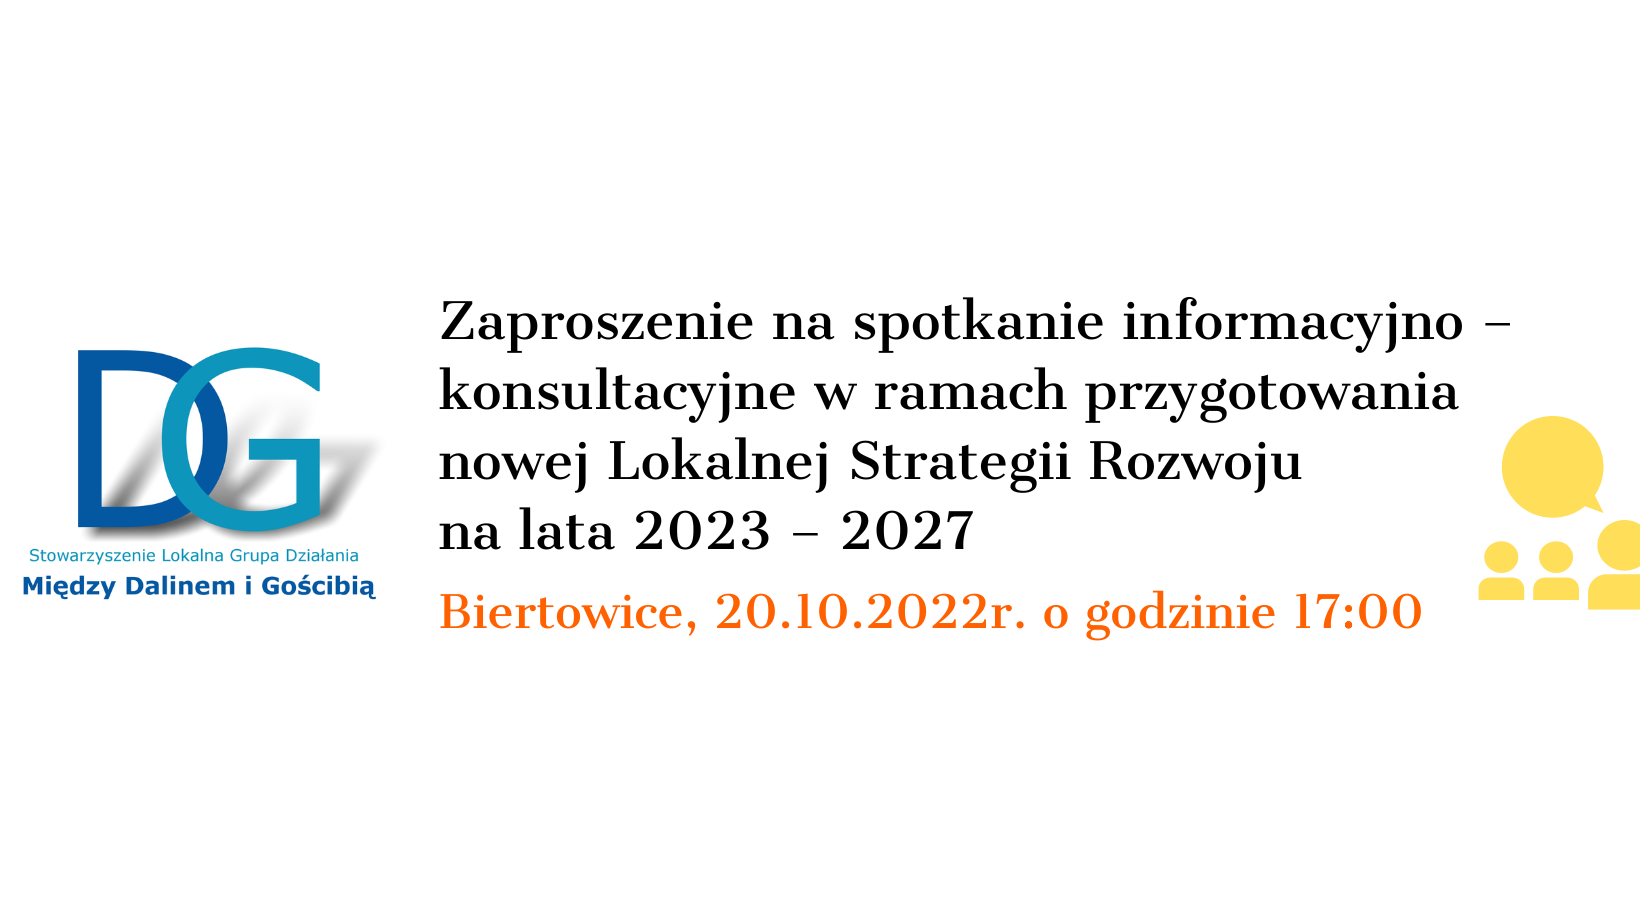 Zaproszenie na spotkanie informacyjno – konsultacyjne w ramach przygotowania nowej Lokalnej Strategii Rozwoju na lata 2023 – 2027 w Biertowicach